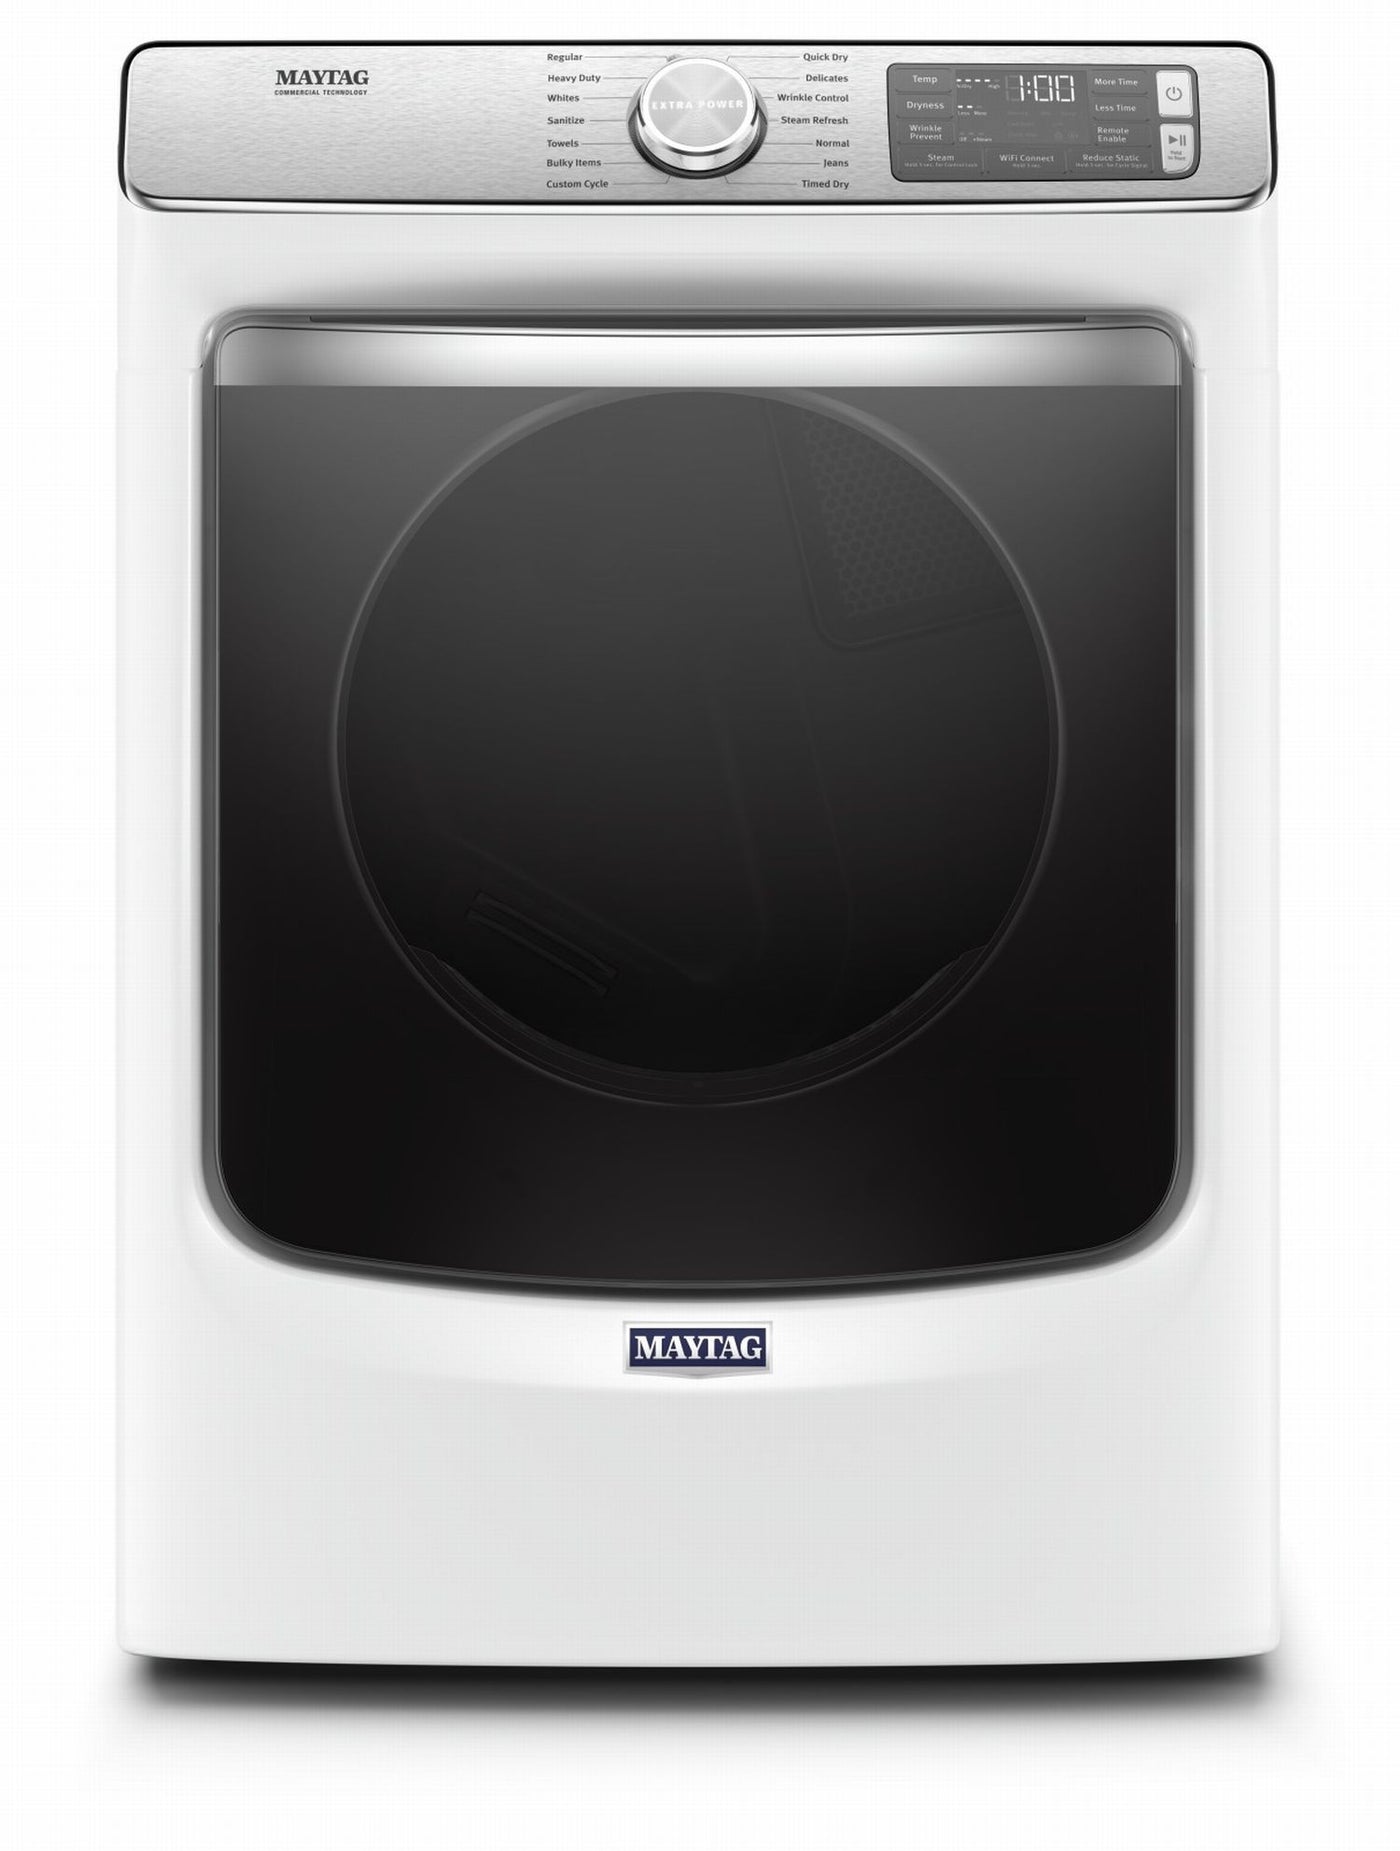 Maytag White Gas Dryer (7.3 Cu. Ft.) - MGD8630HW